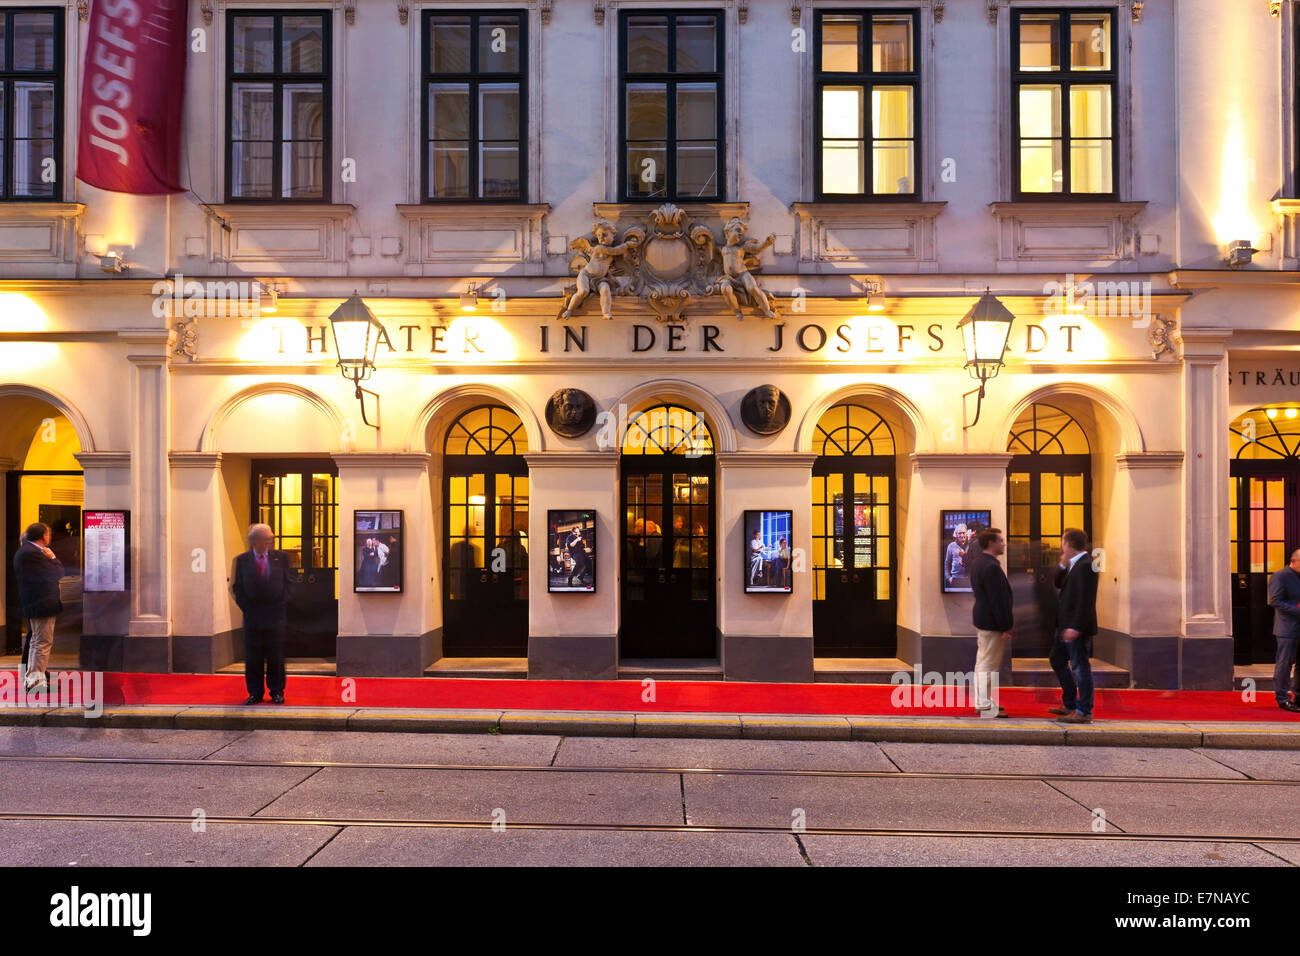 Menschen warten auf die nächsten Stücke vor des Theaters in der Josefstadt Wien - Österreich Stockfoto